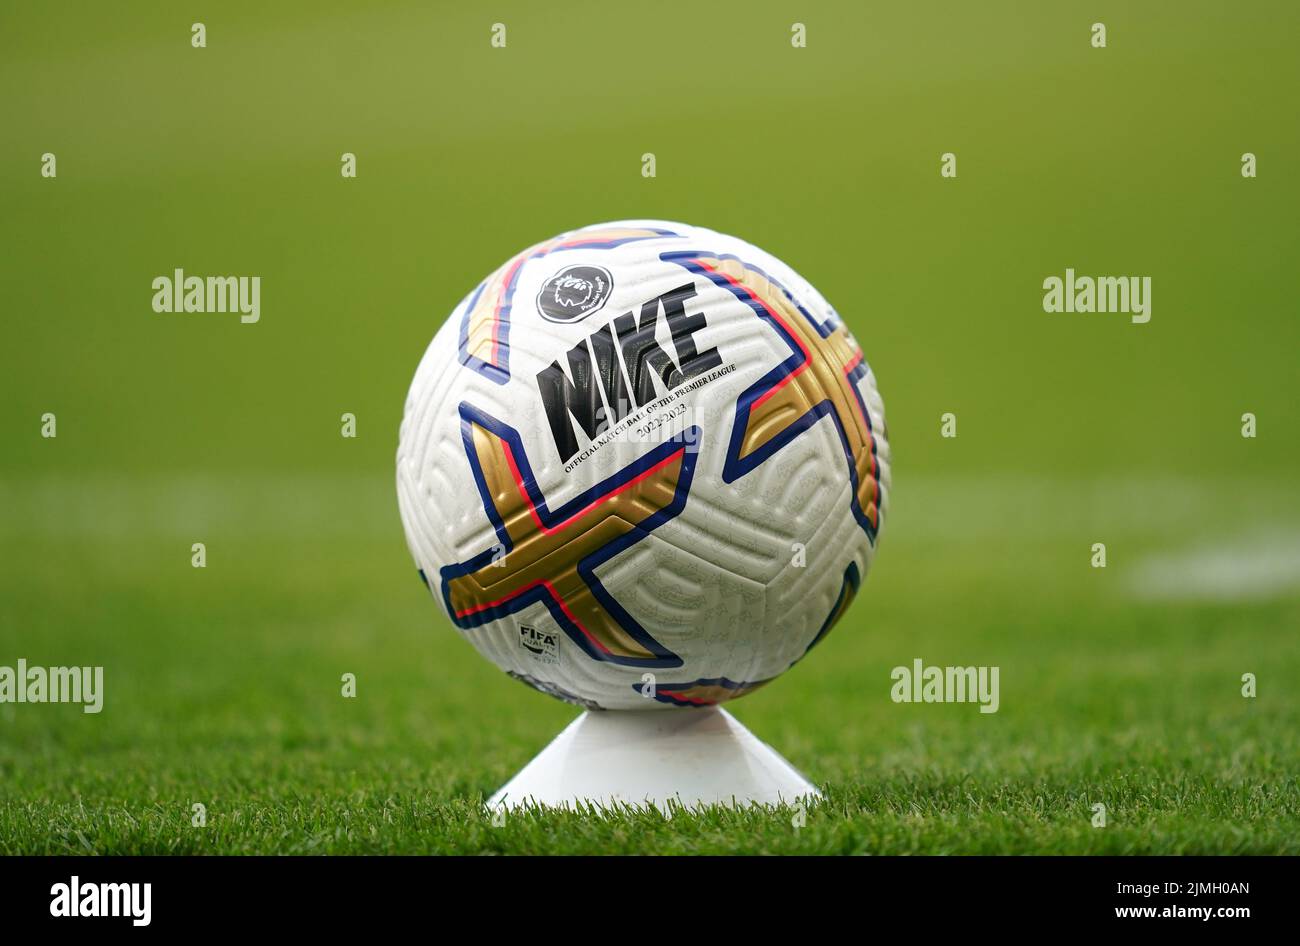 Ein Überblick über einen Nike-Matchball während des Premier League-Spiels im Goodison Park, Liverpool. Bilddatum: Samstag, 6. August 2022. Stockfoto